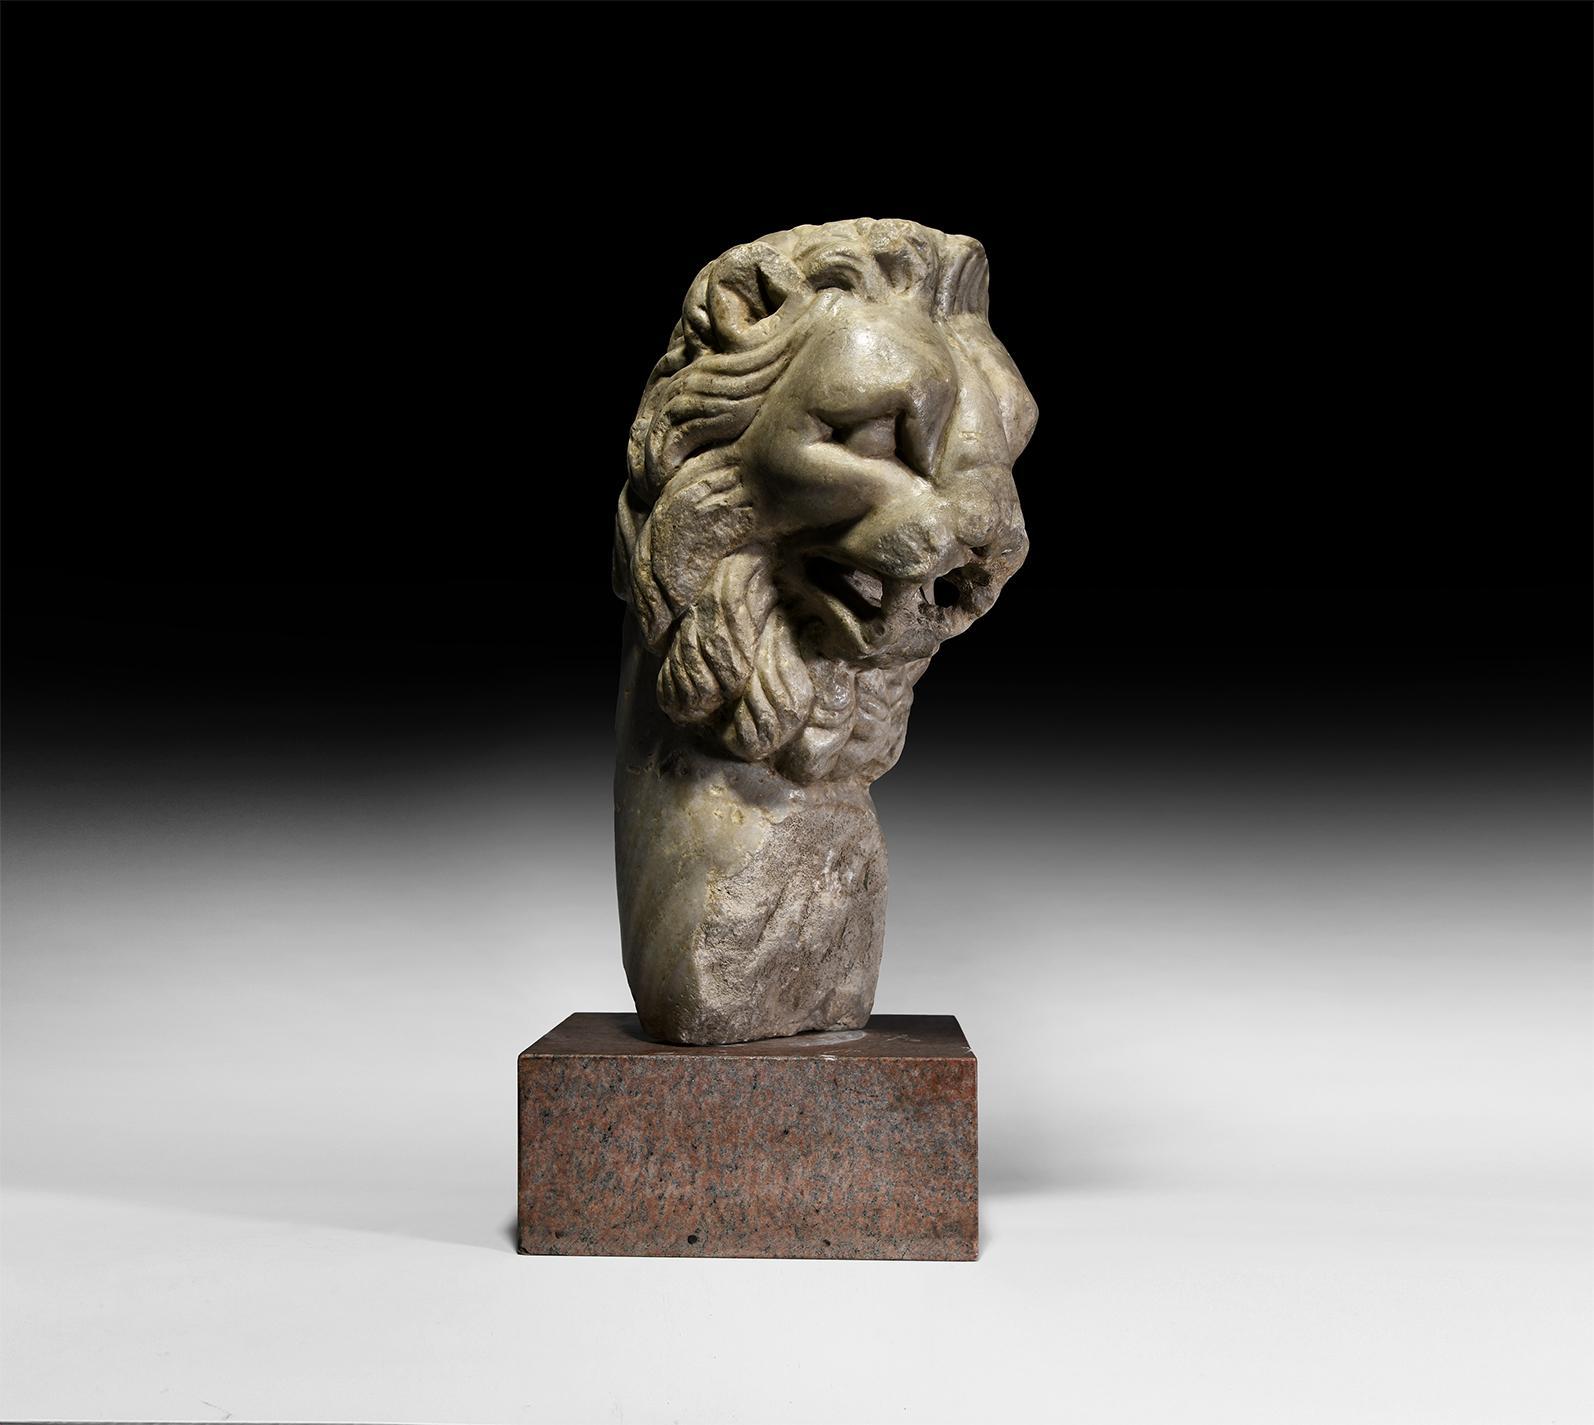 Unknown Figurative Sculpture – ANTIKER MONUMENTALER MARMORNER LÖWENBRUNNENKOPF RÖMISCHES REICH 1/2. JAHRHUNDERT N. CHR.